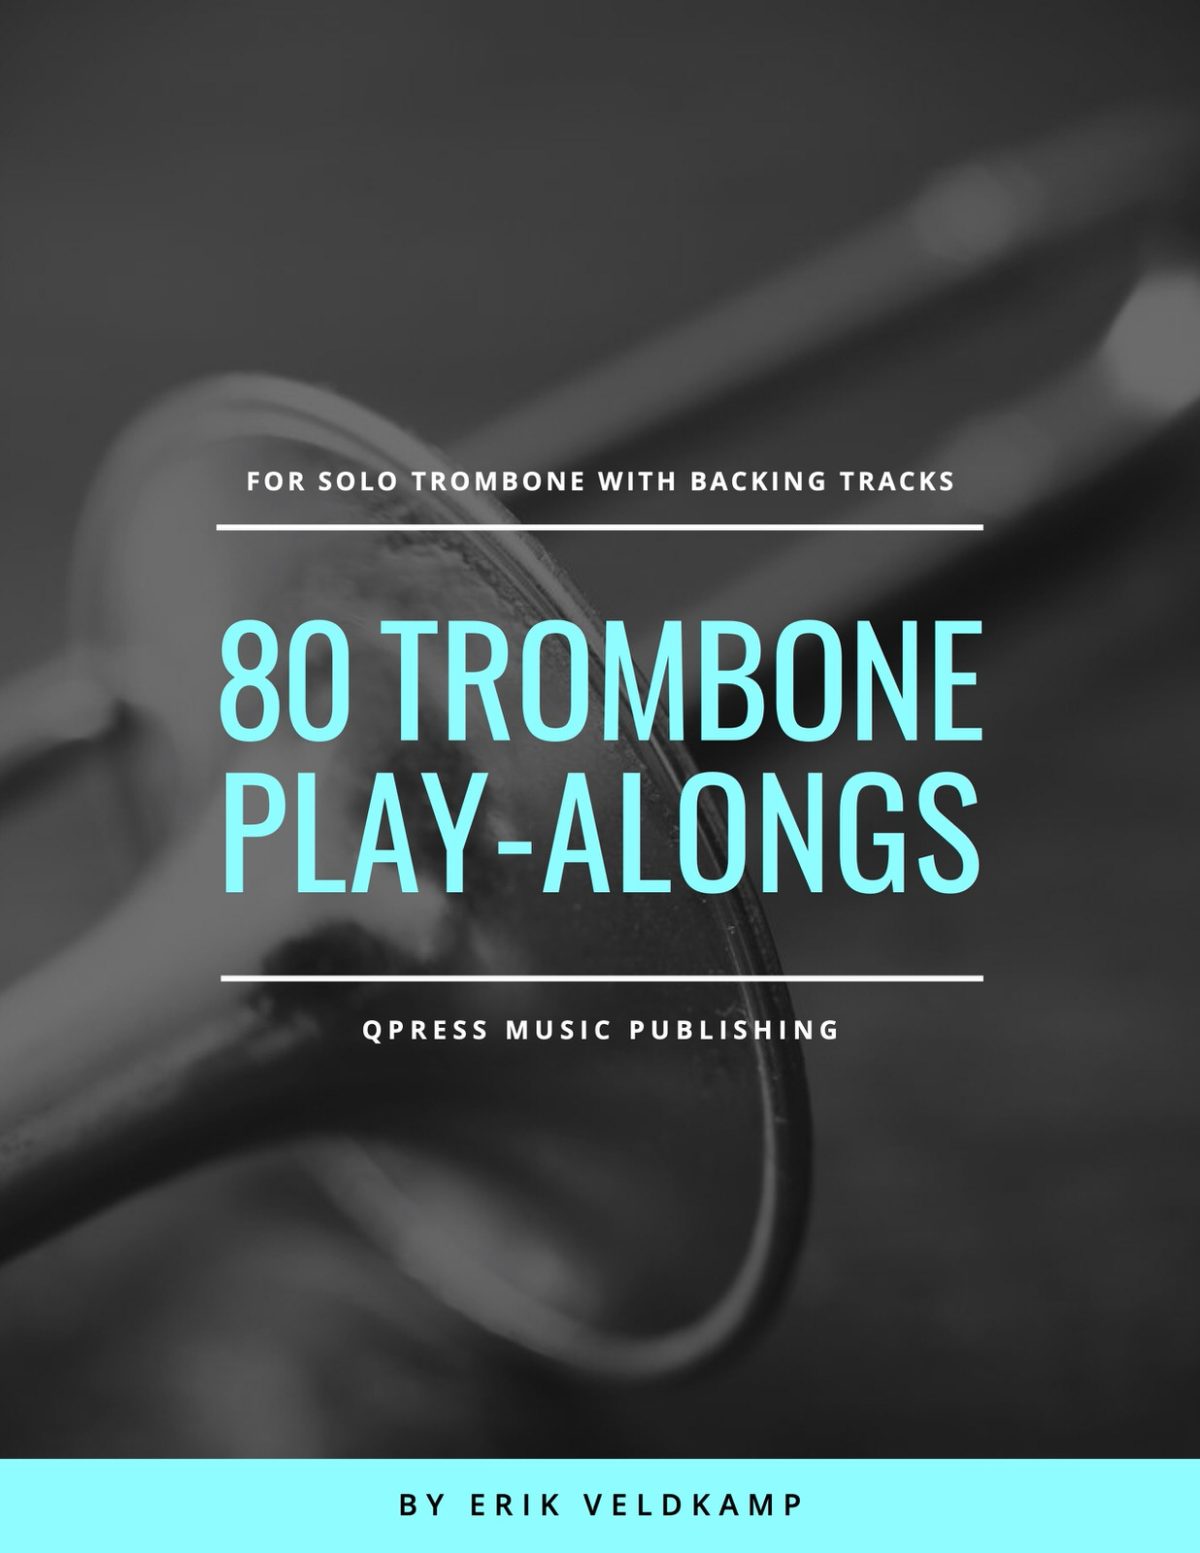 Veldkamp Trombone 80 Playalongs